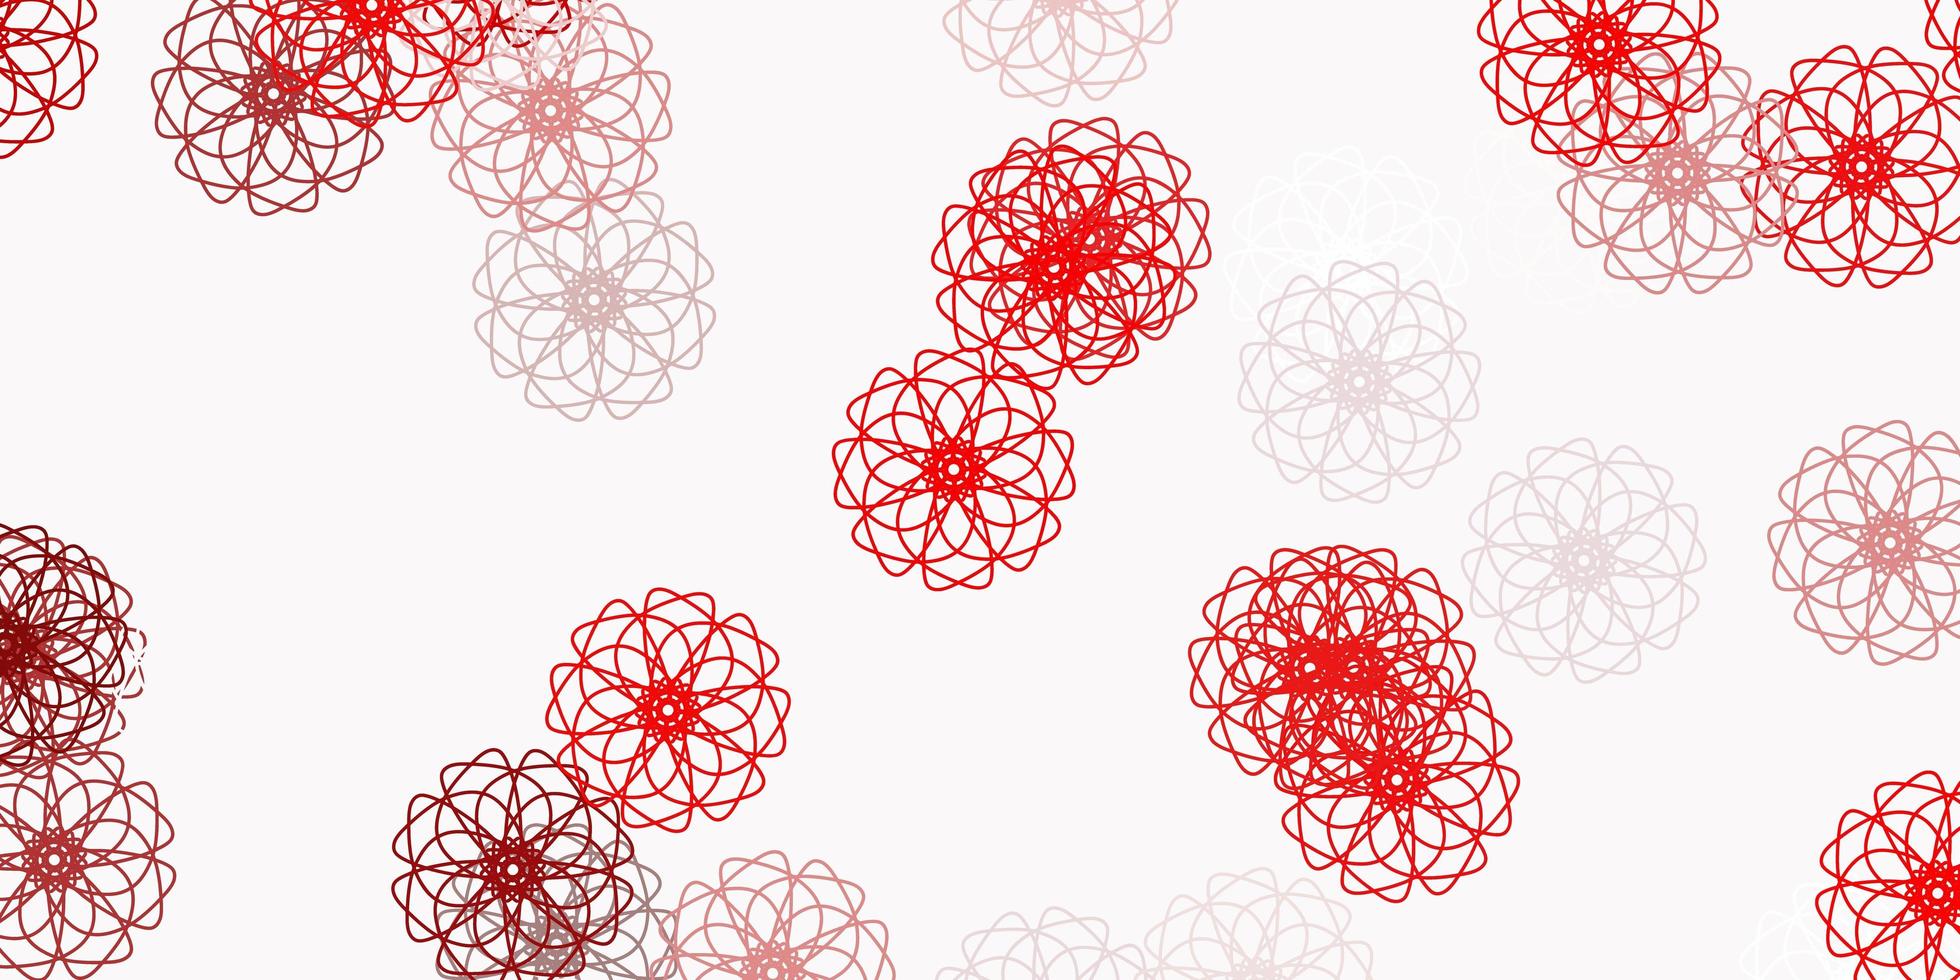 sfondo di doodle di vettore arancione chiaro con fiori